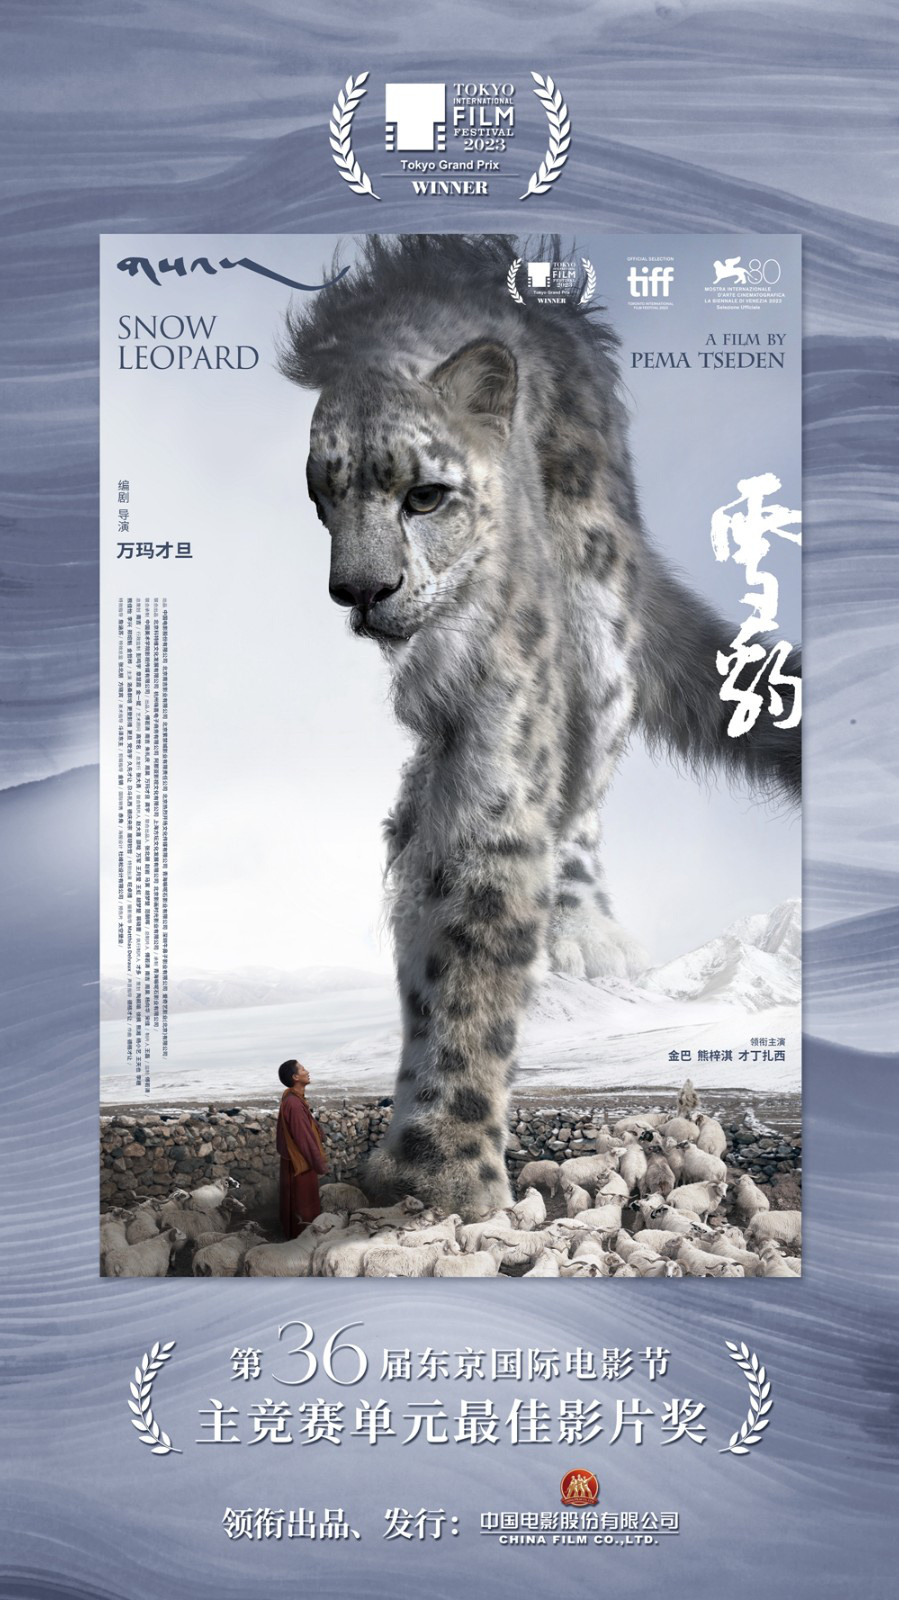 《雪豹》获东京国际电影节大奖 独特人文气质获赞